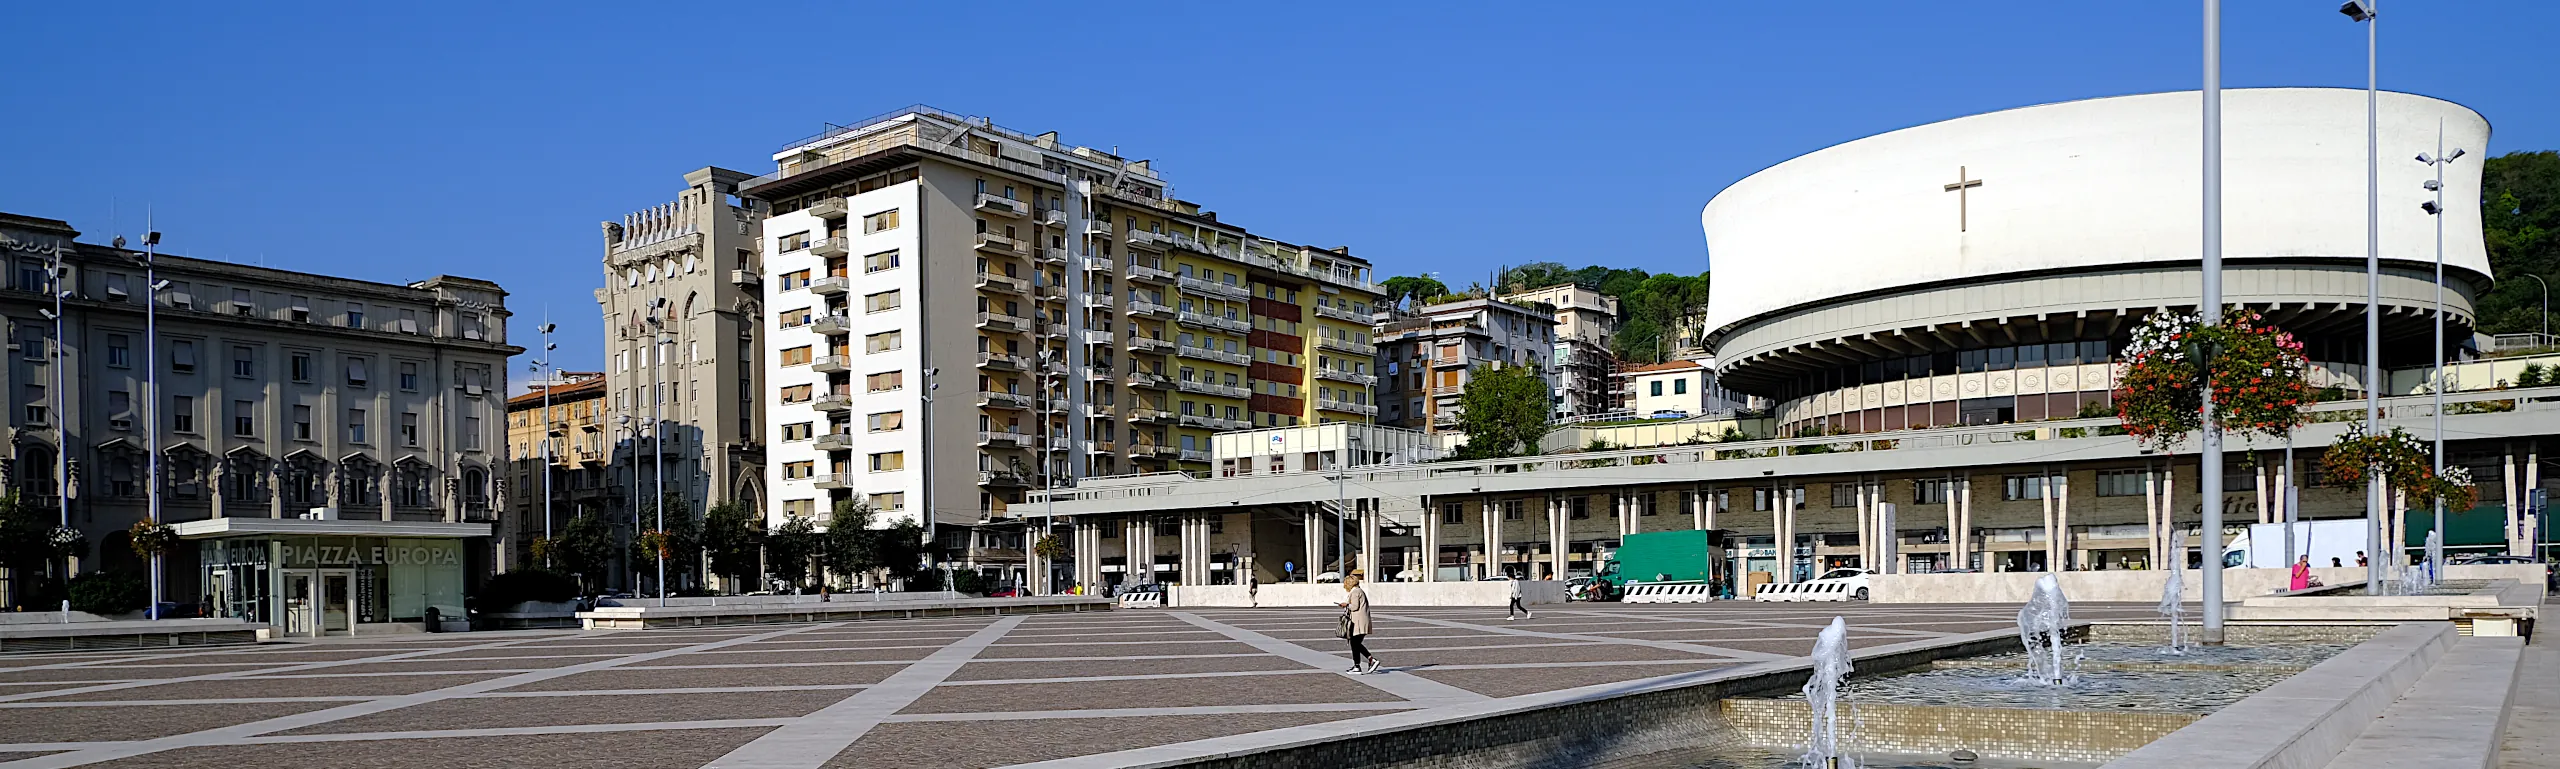 Lavori condominiali La Spezia e Massa Carrara